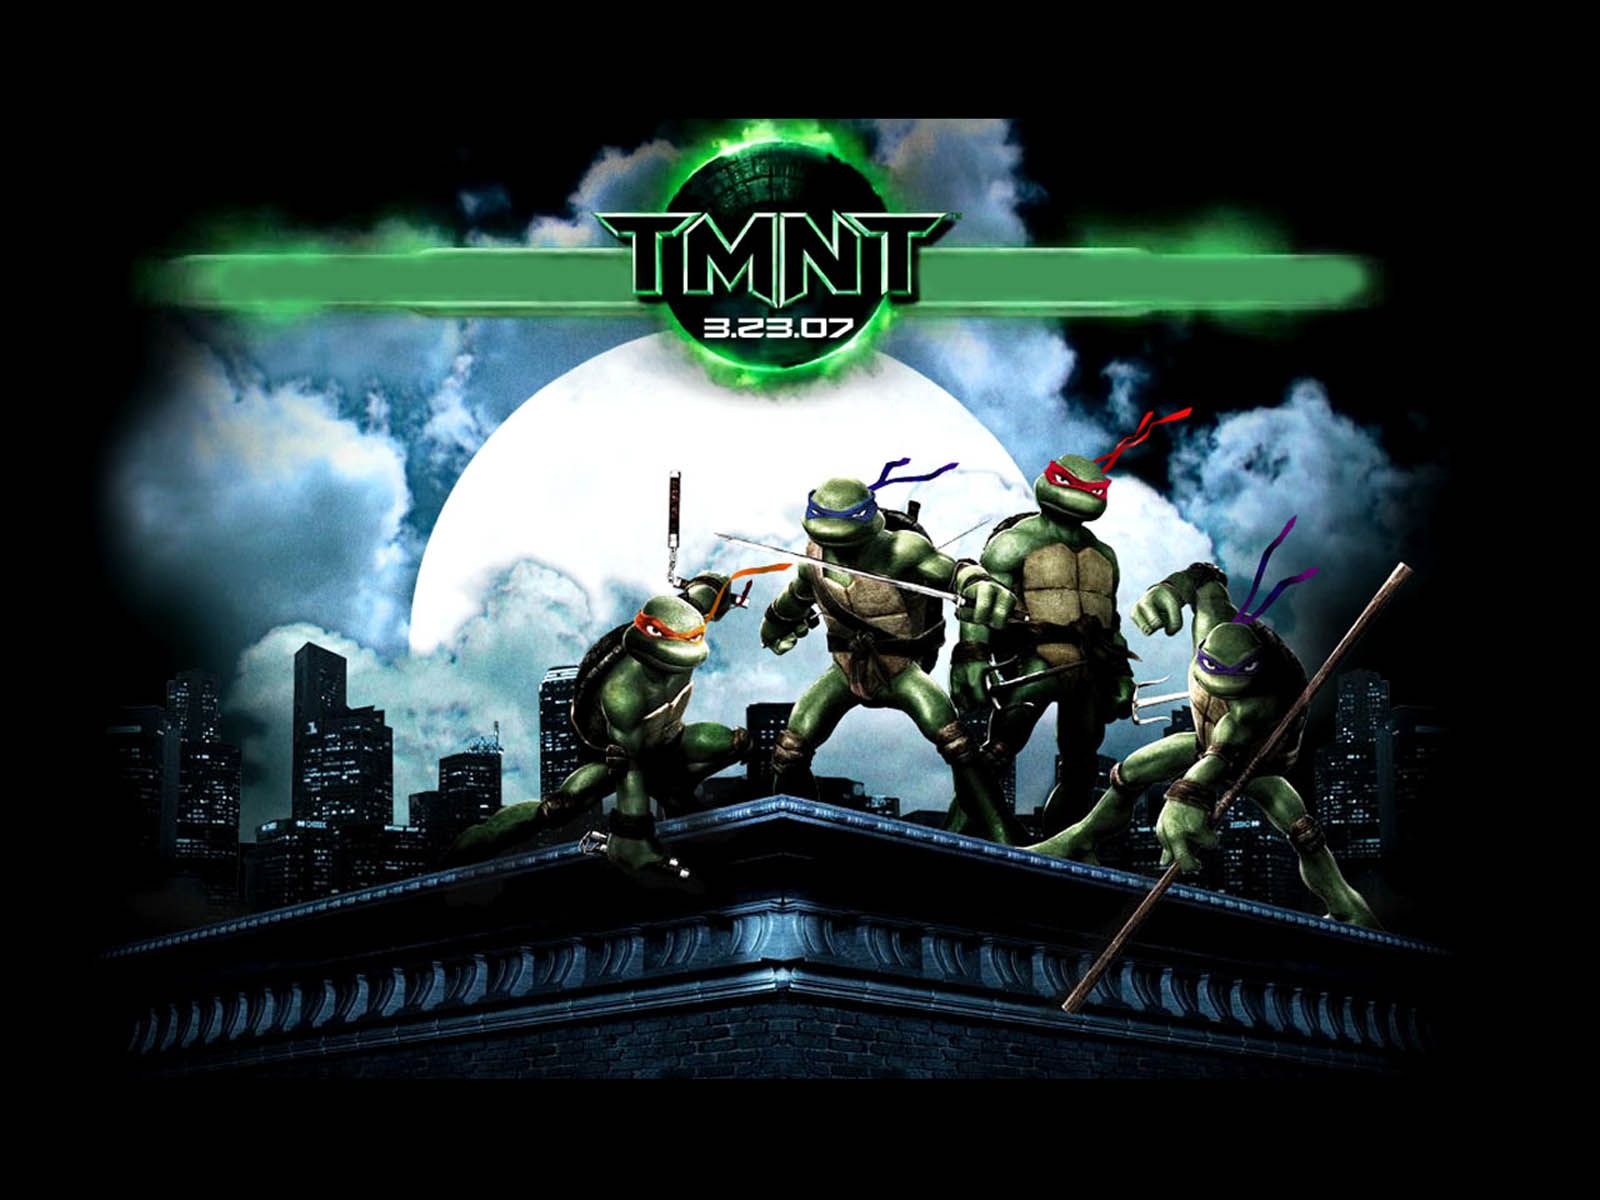 wallpapers: Teenage Mutant Ninja Turtles (TMNT)